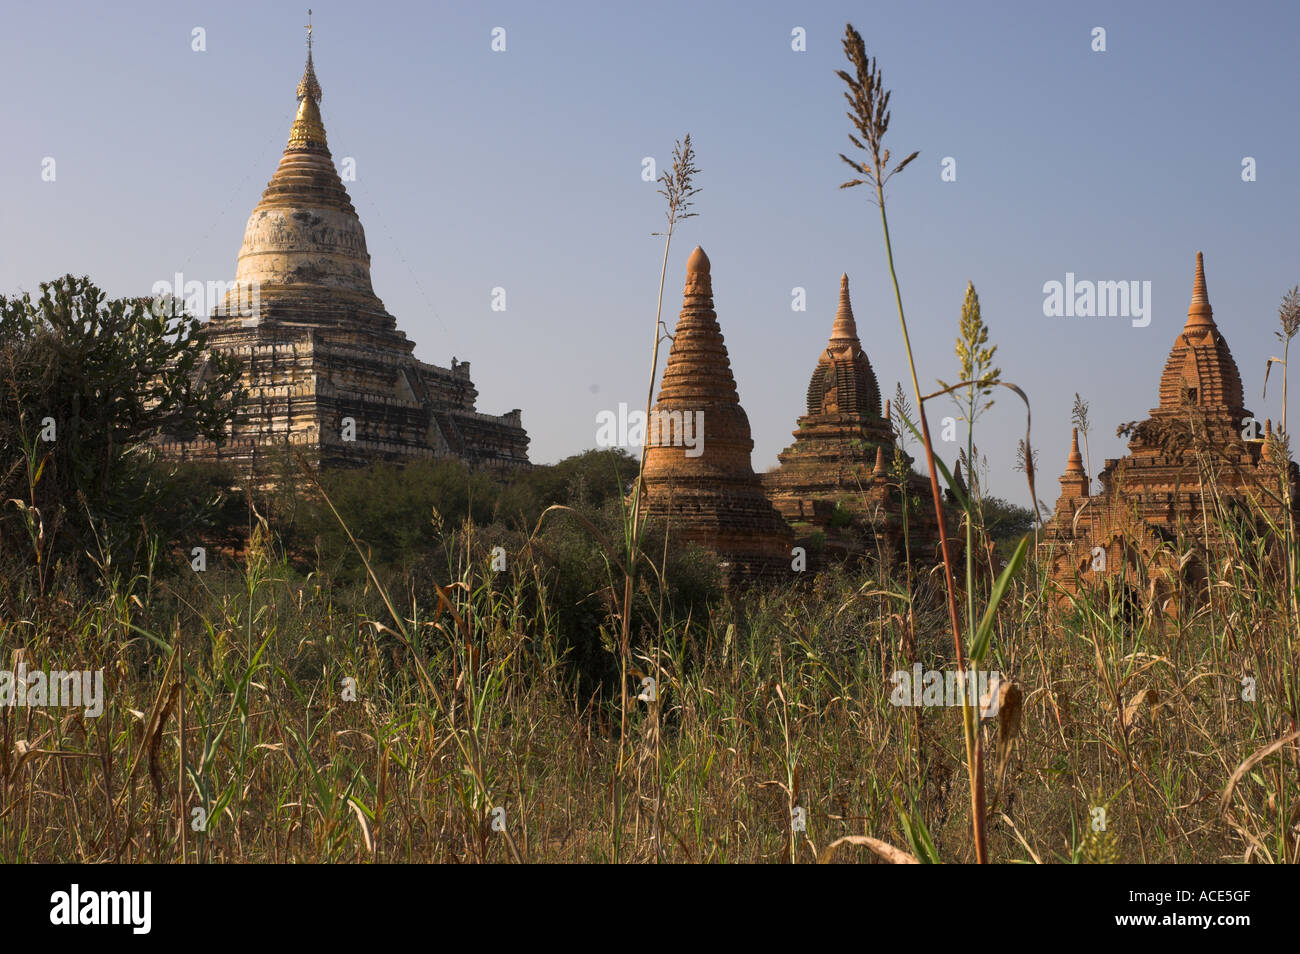 Myanmar-Burma-Bagan archäologische Zone mehr als 4000 Tempel in einer Biegung des Arbeitskreises Ayeyarwady Fluss des Tempels Stupas gesehen thro Stockfoto